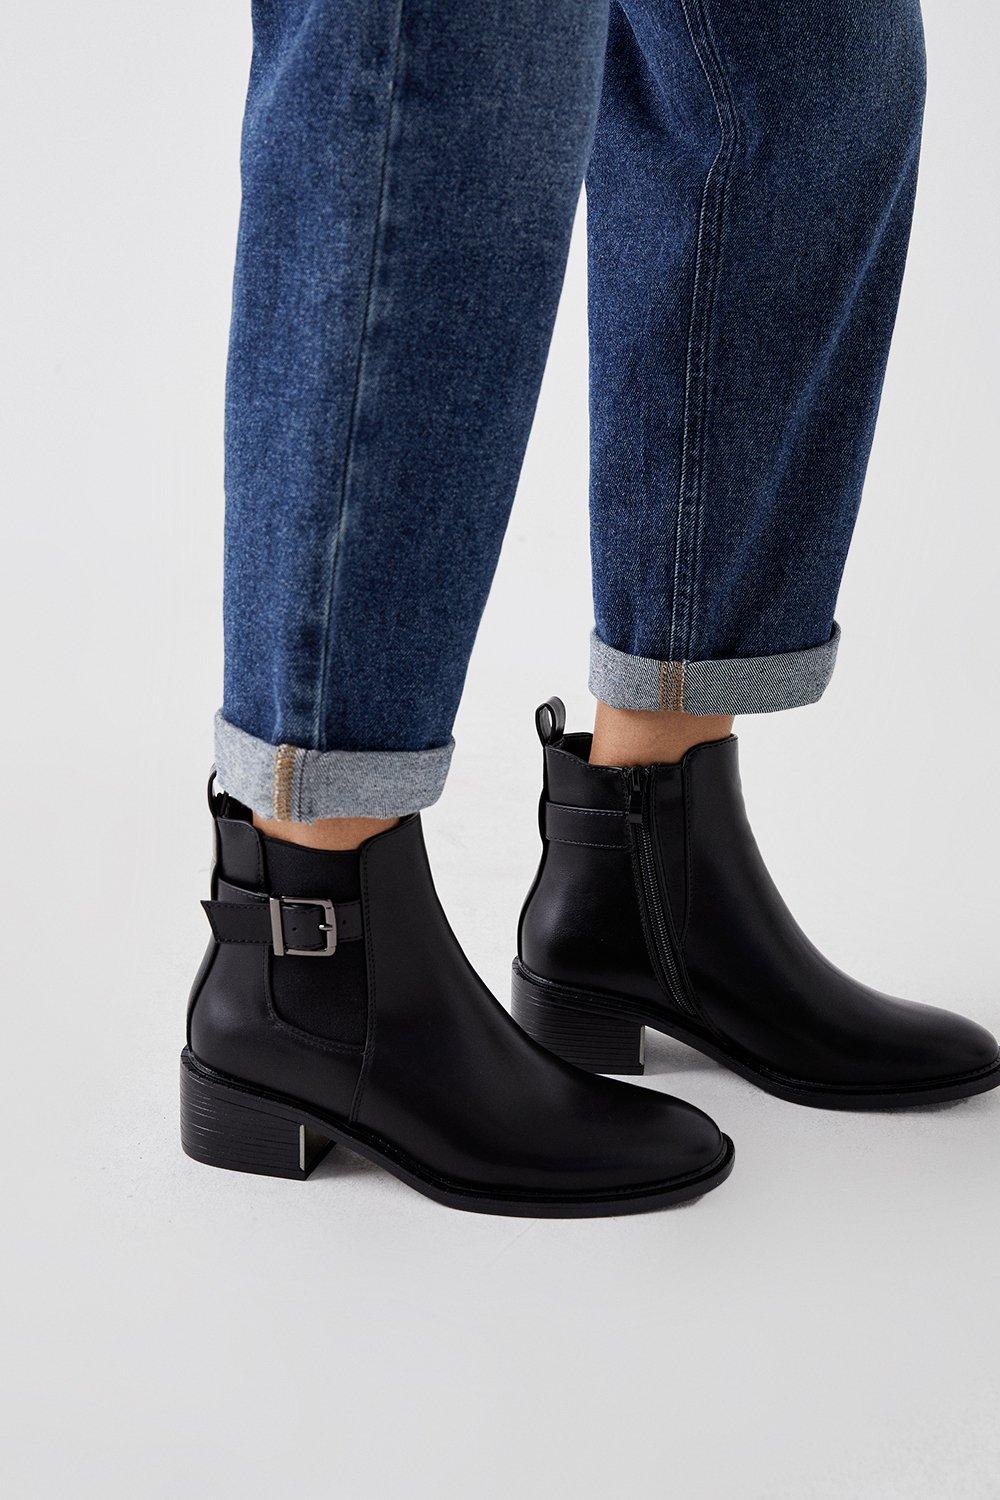 Women’s Faith: Andrea Buckle Trim Ankle Boots - black - 3